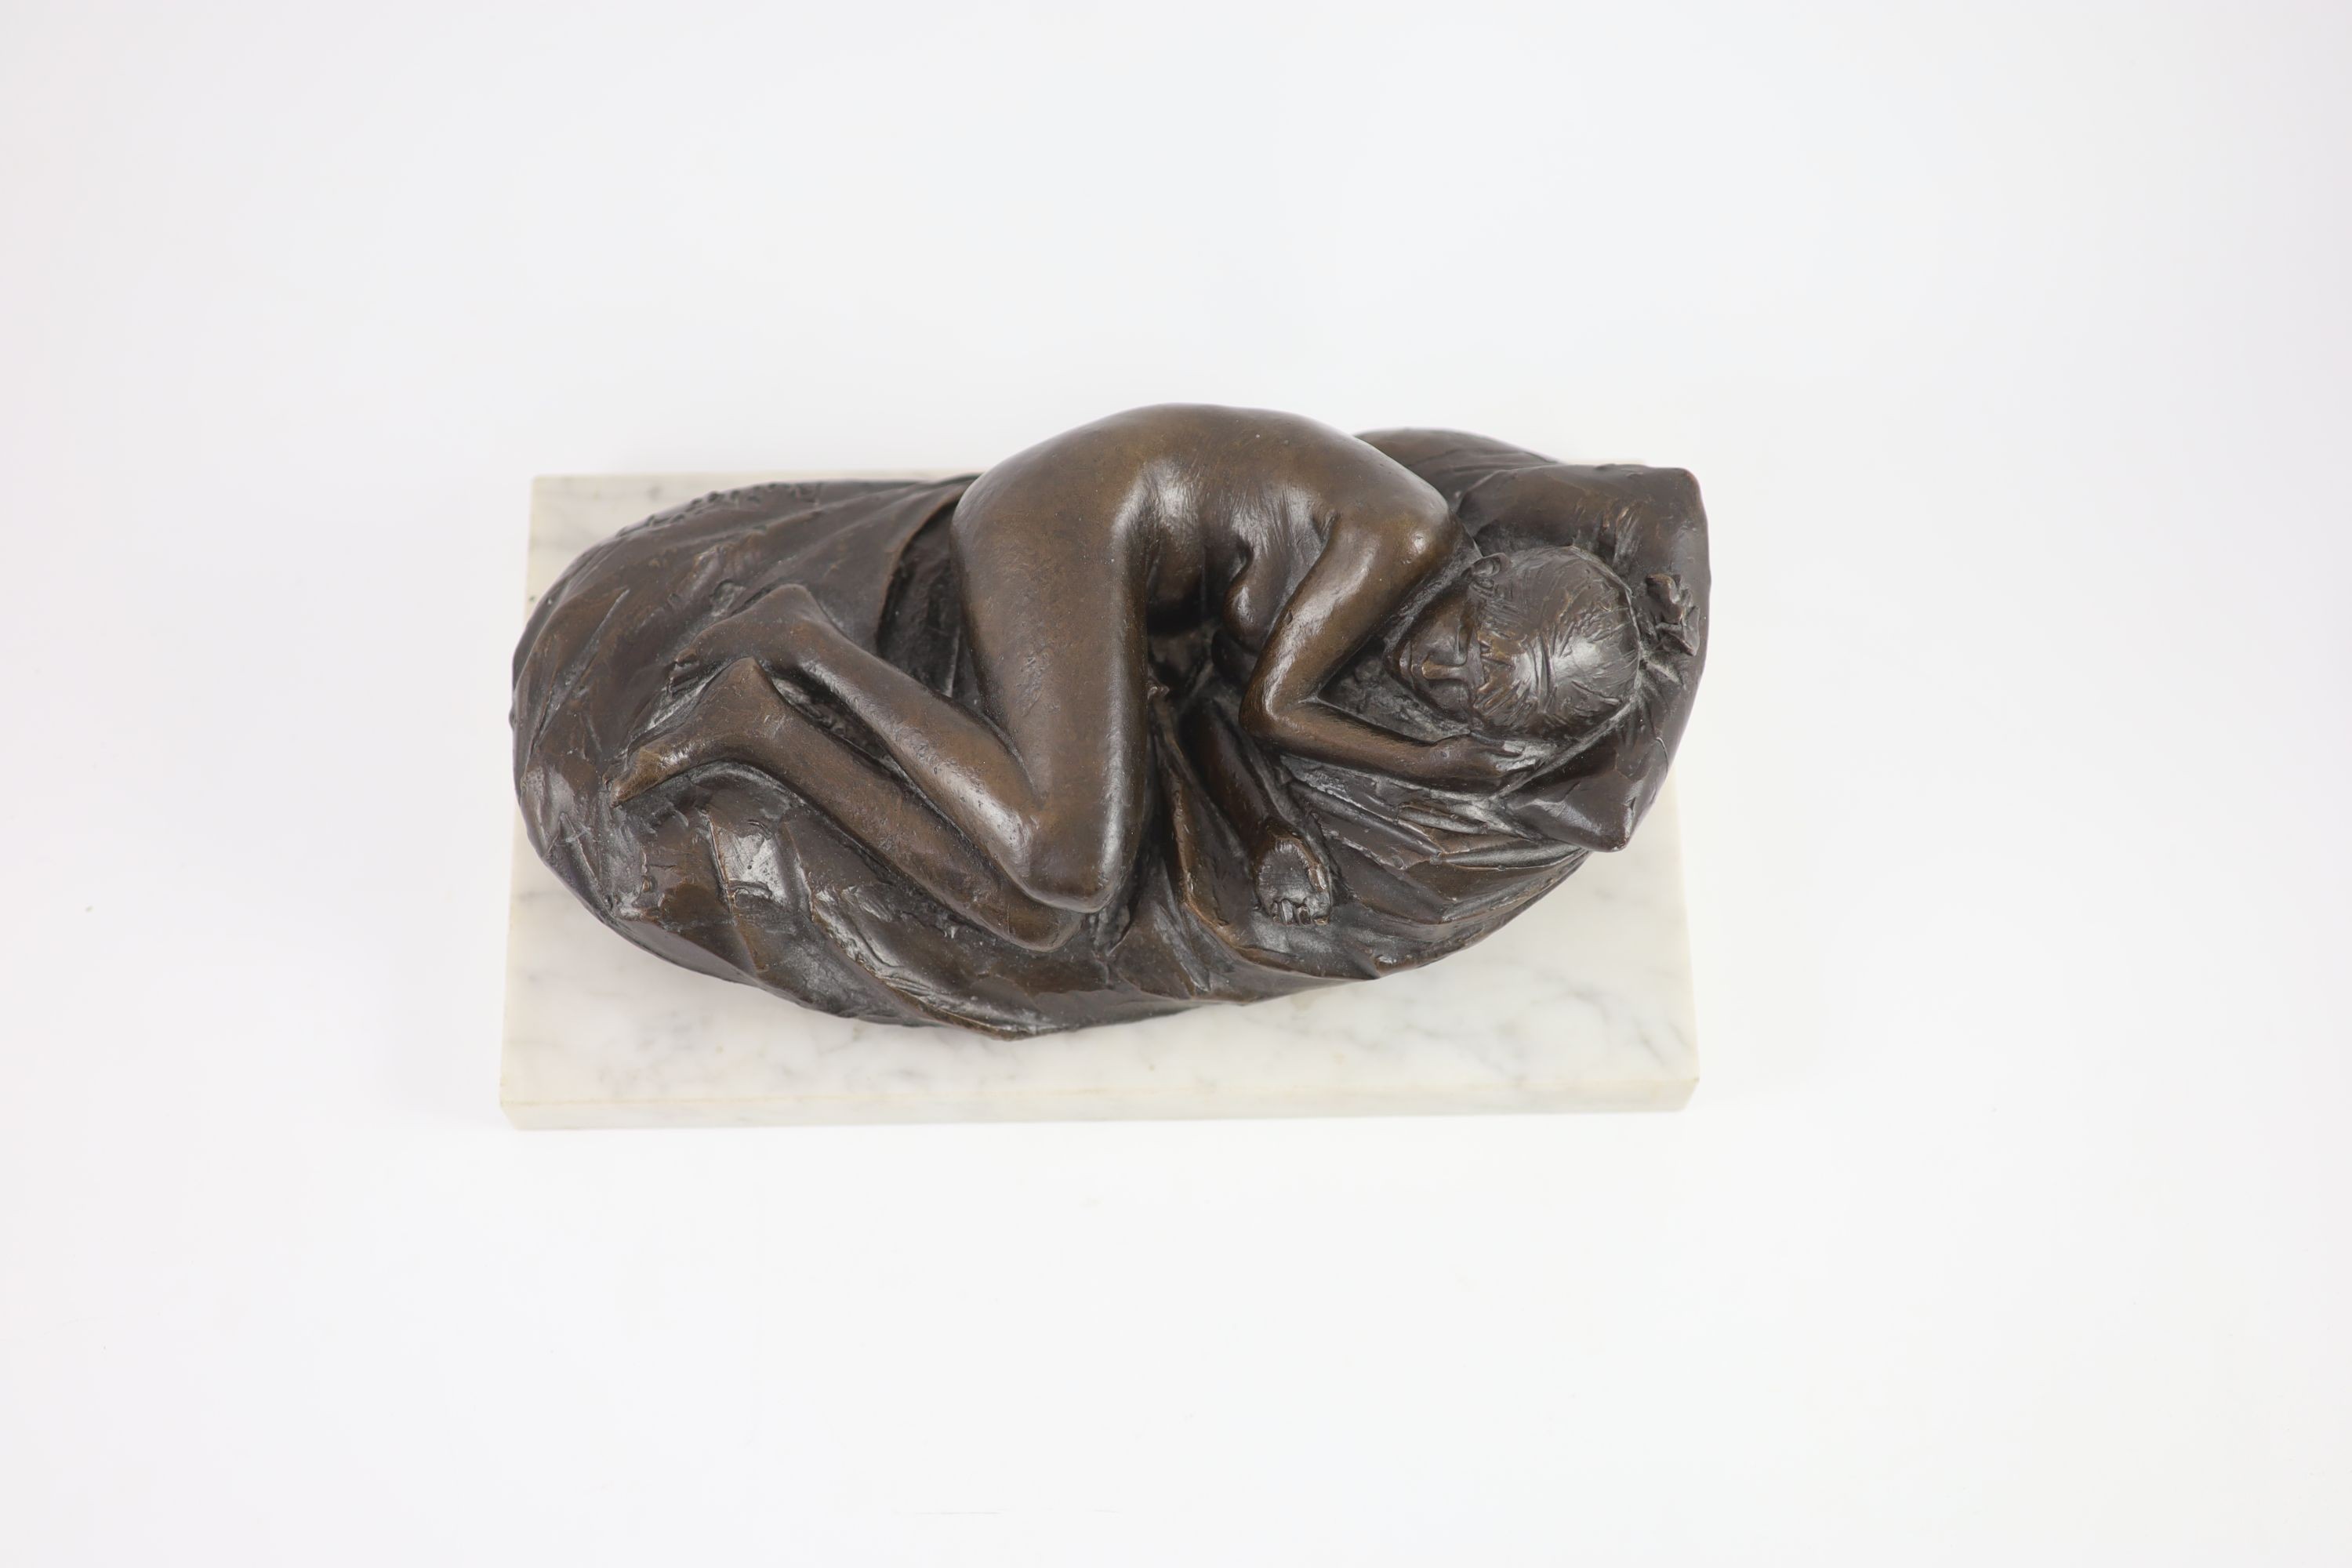 James W. Butler. RA., A bronze model of a sleeping girl, width 31cm depth 18cm height 13cm